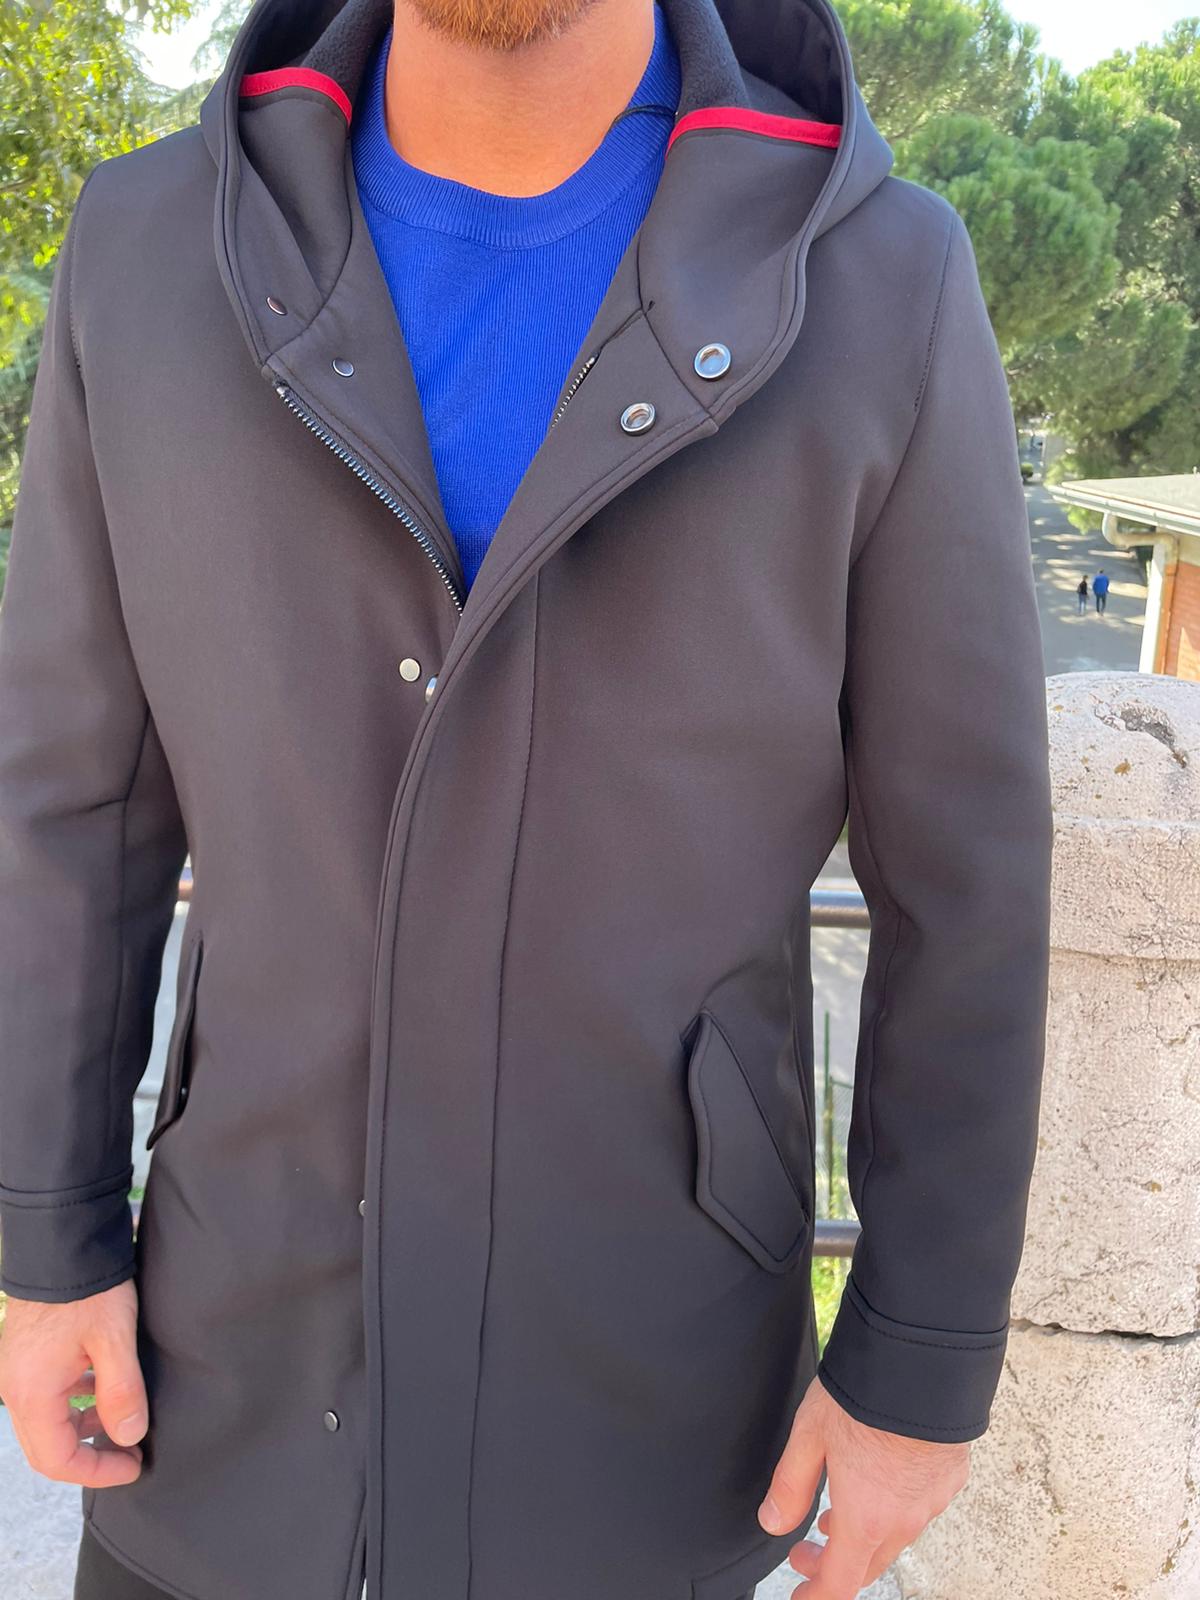 S17 Milano long coat jacket mod. Urali with zip